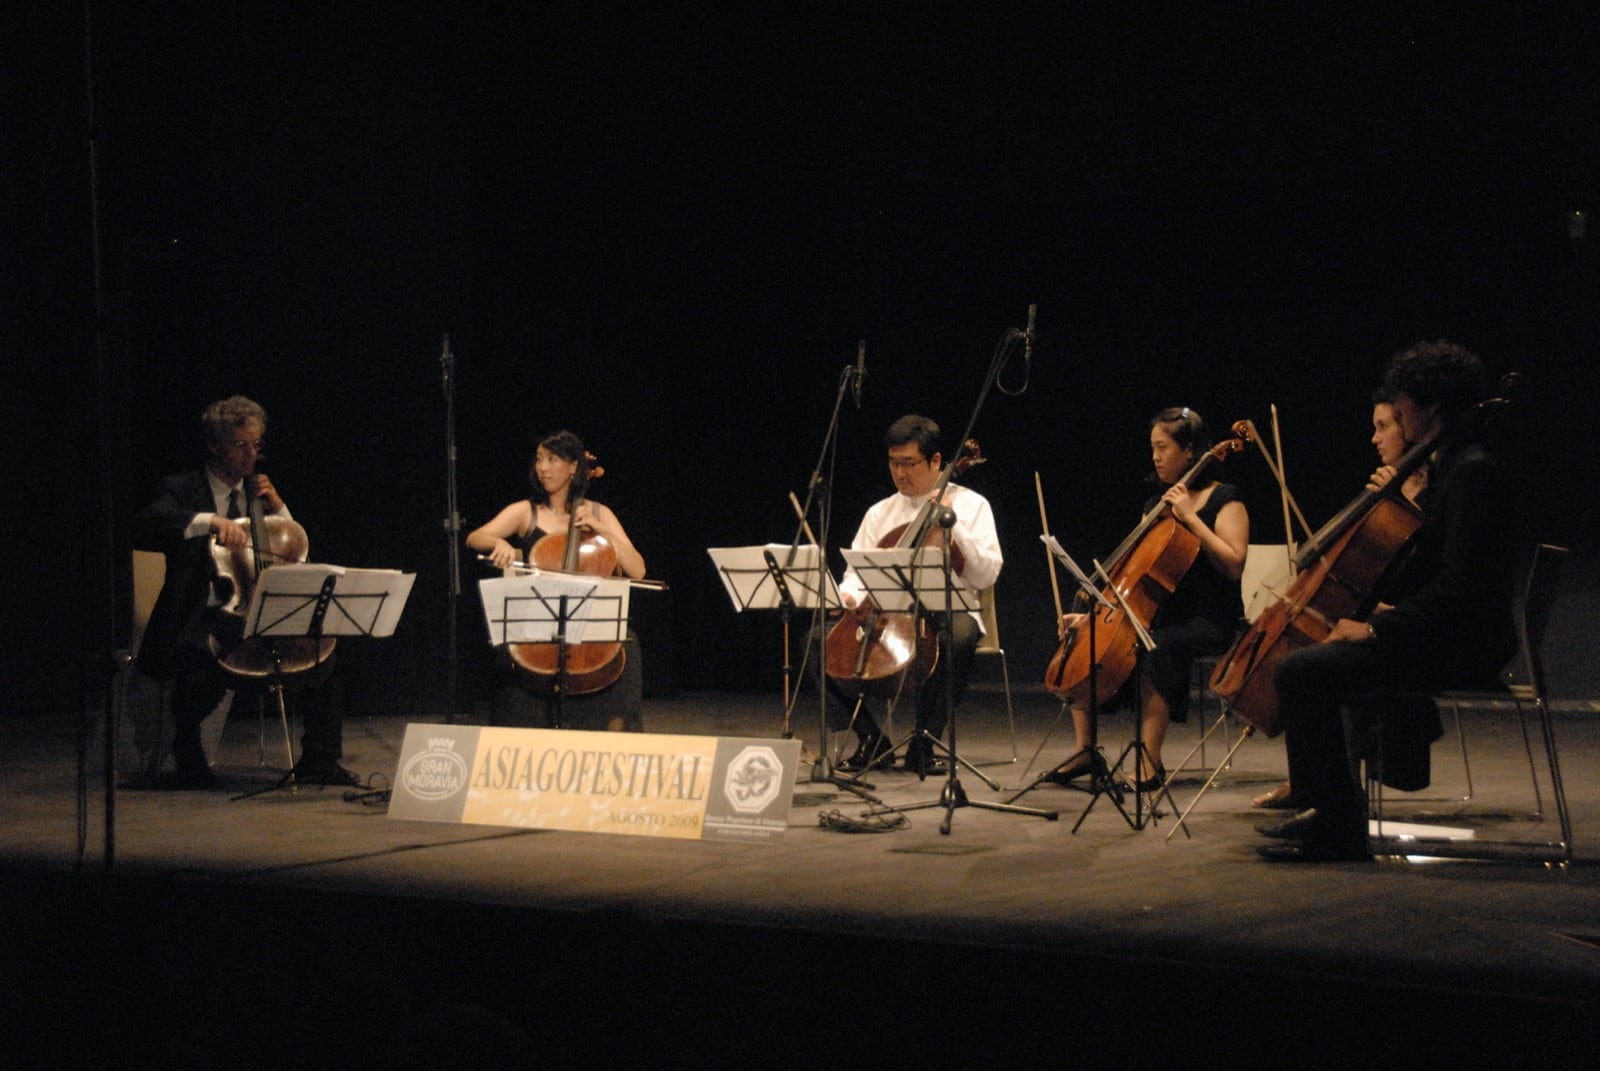 06-08-2009 - Cello Passionato003 - 